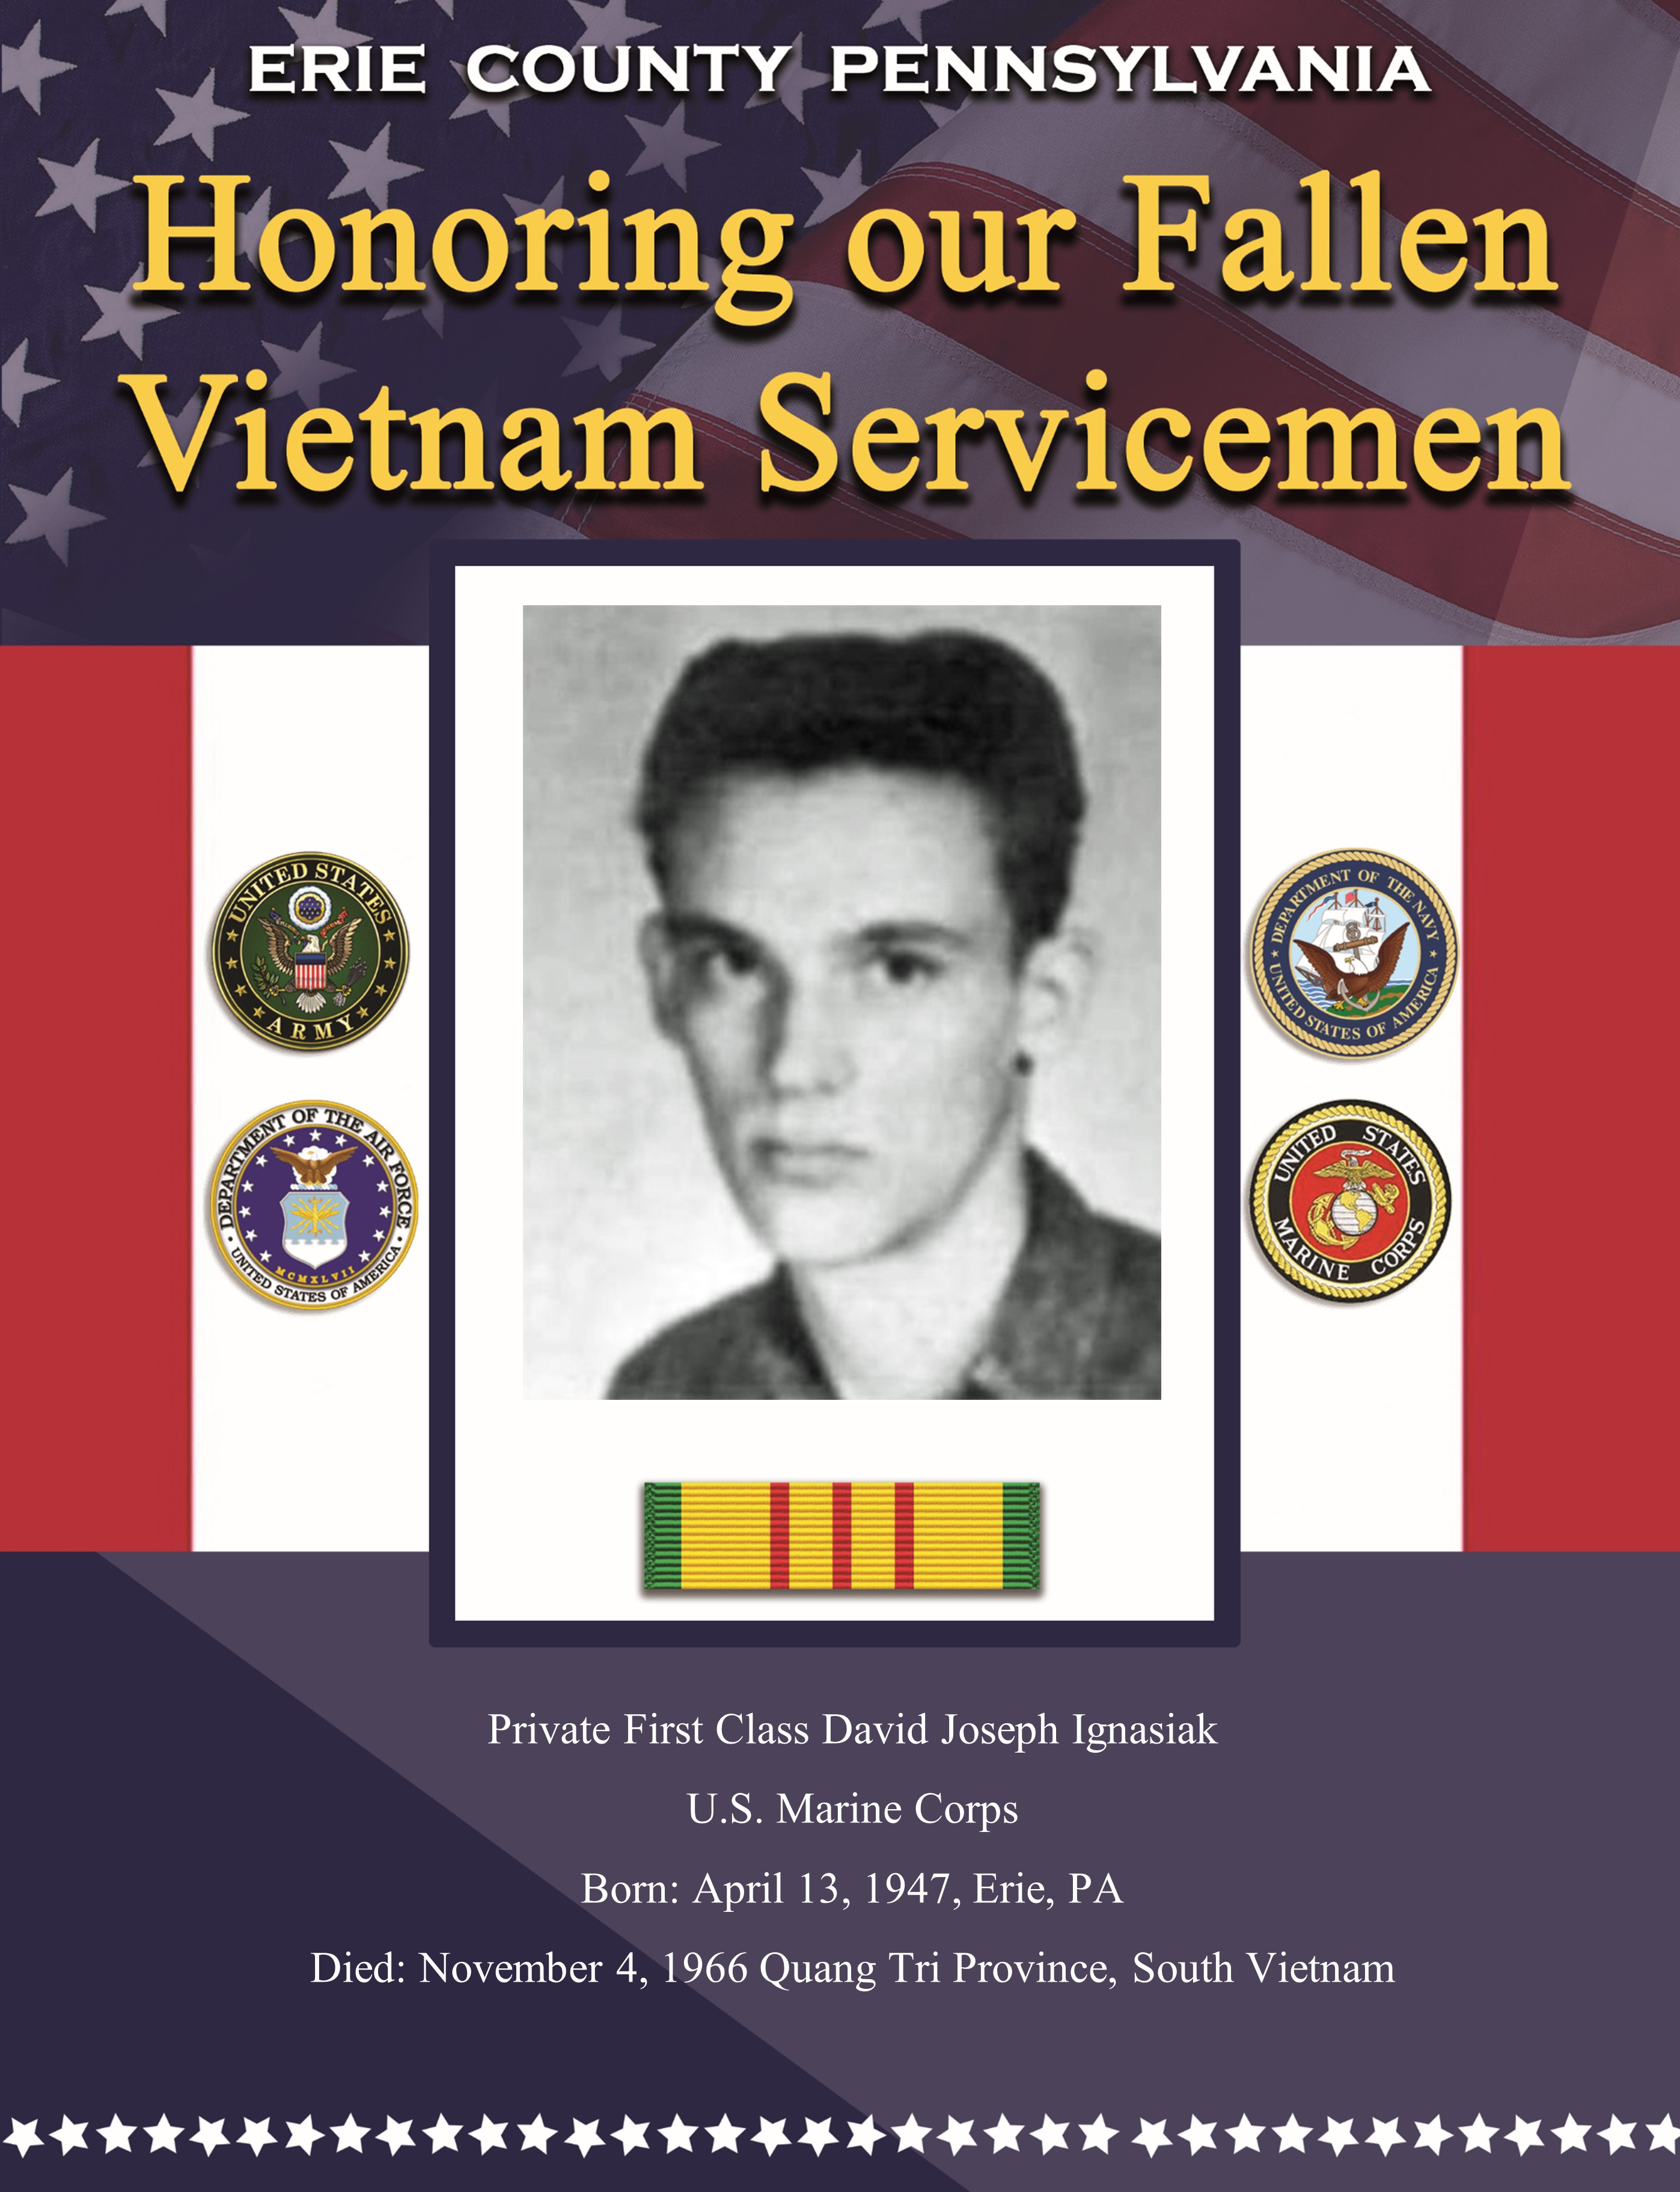 Fallen in Vietnam 8